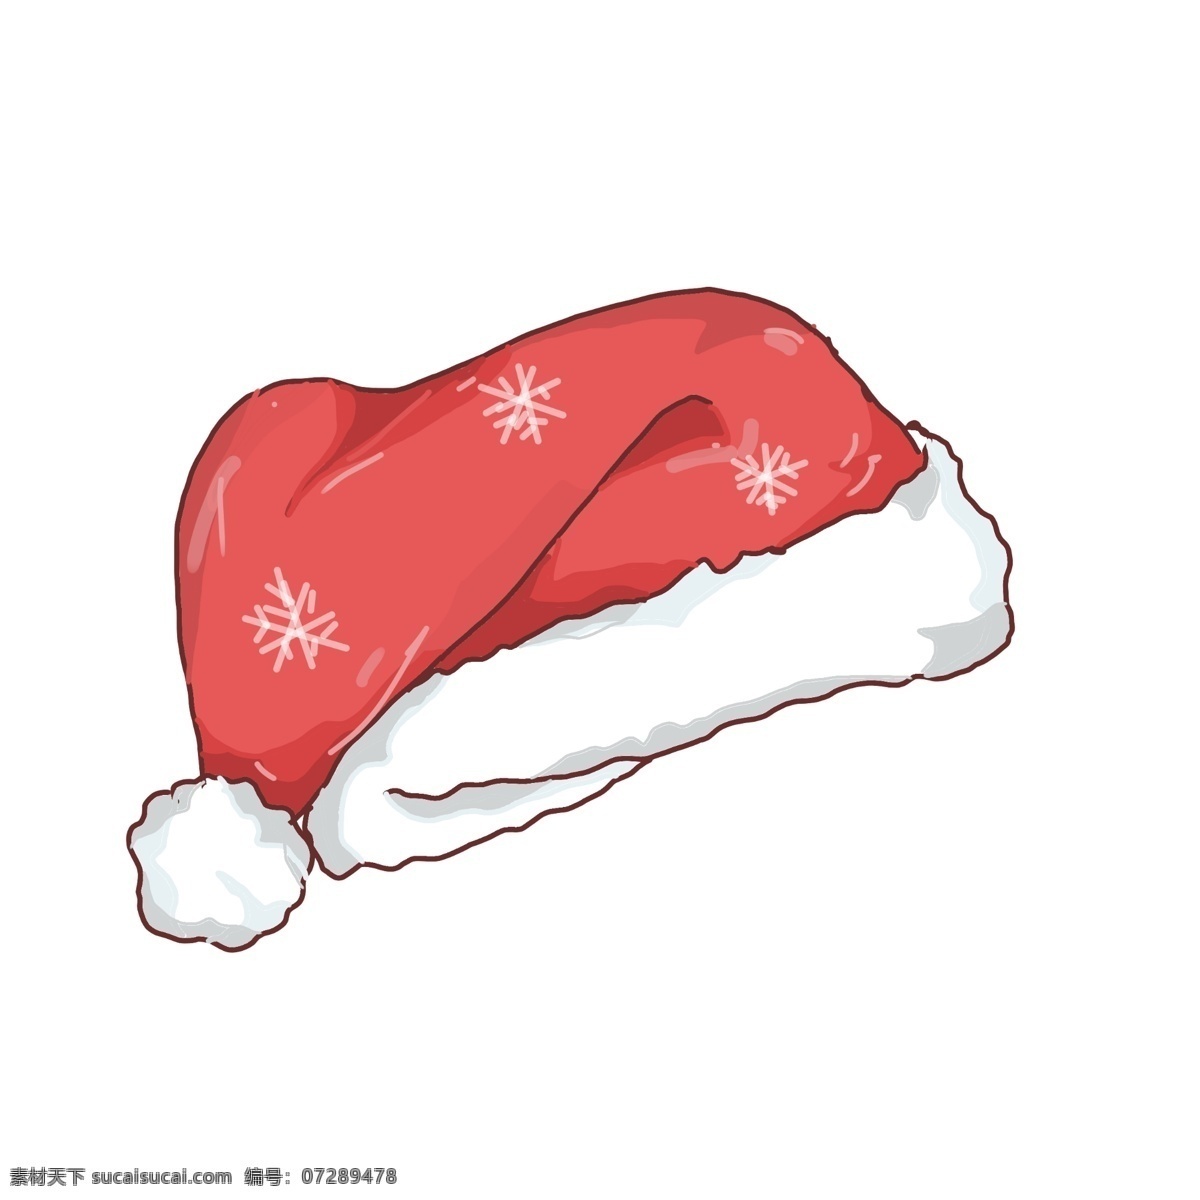 手绘 圣诞节 帽子 插画 快乐的圣诞节 愉快的圣诞节 圣诞节插画 创意 红色的帽子 帽子插画